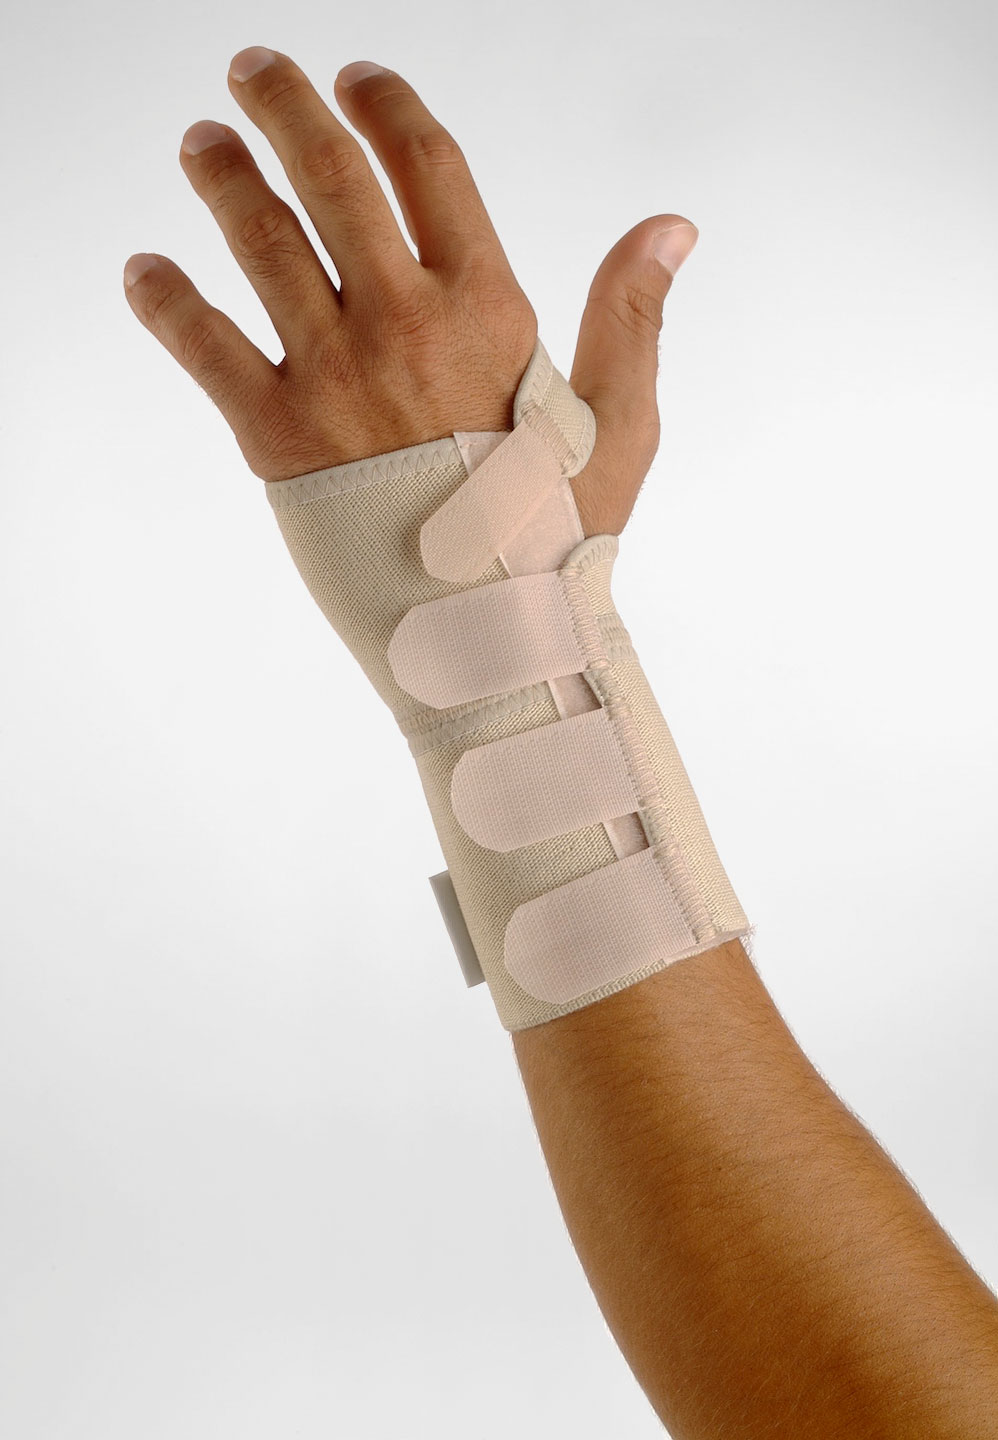 Ortéza na zápästie s hliníkovým držiakom a suchým zipsom – Ľavá ruka